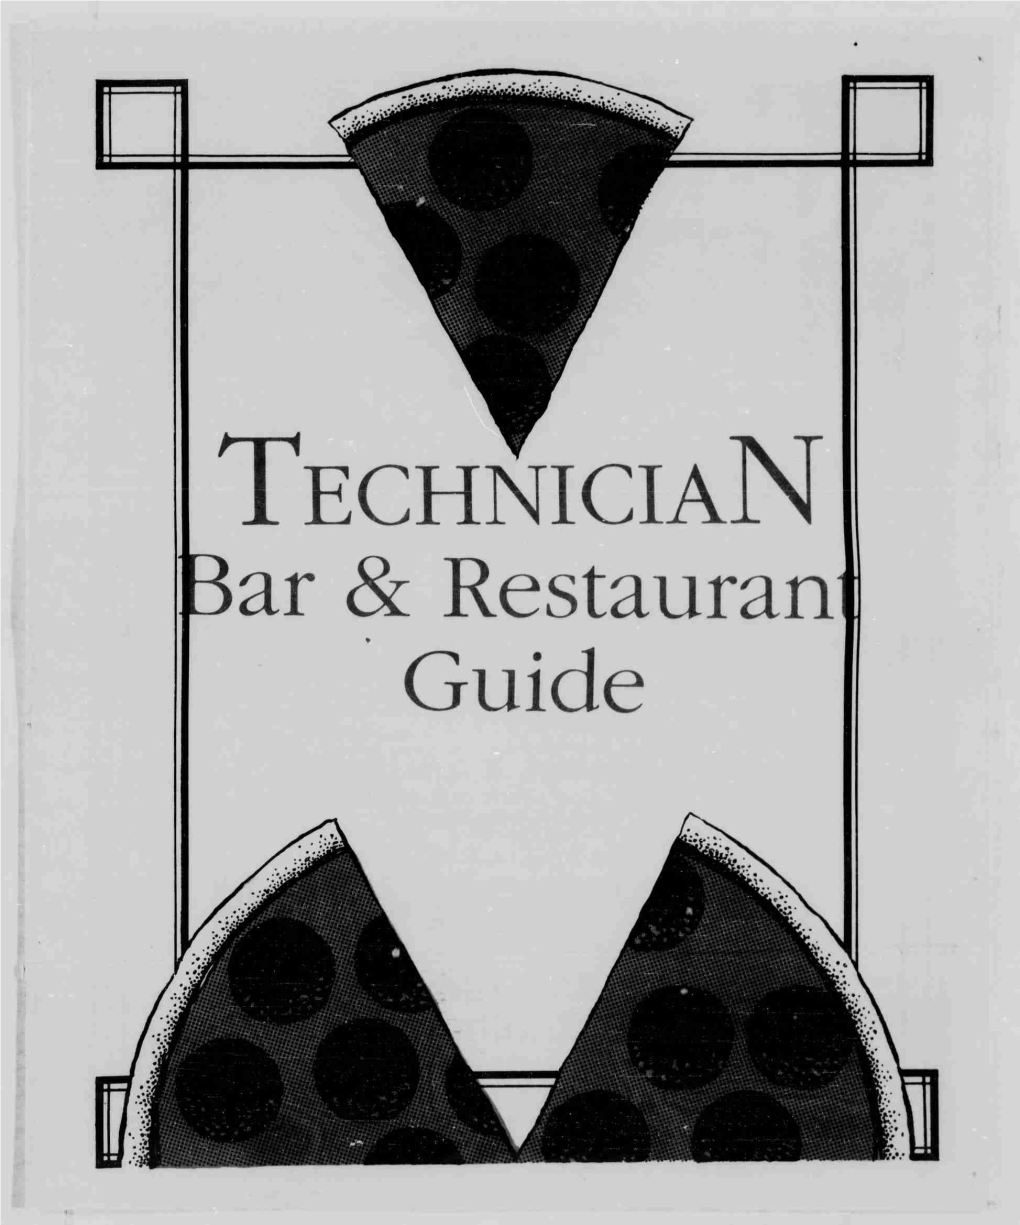 TECHNICIAN Ar 8: Restauran Guide